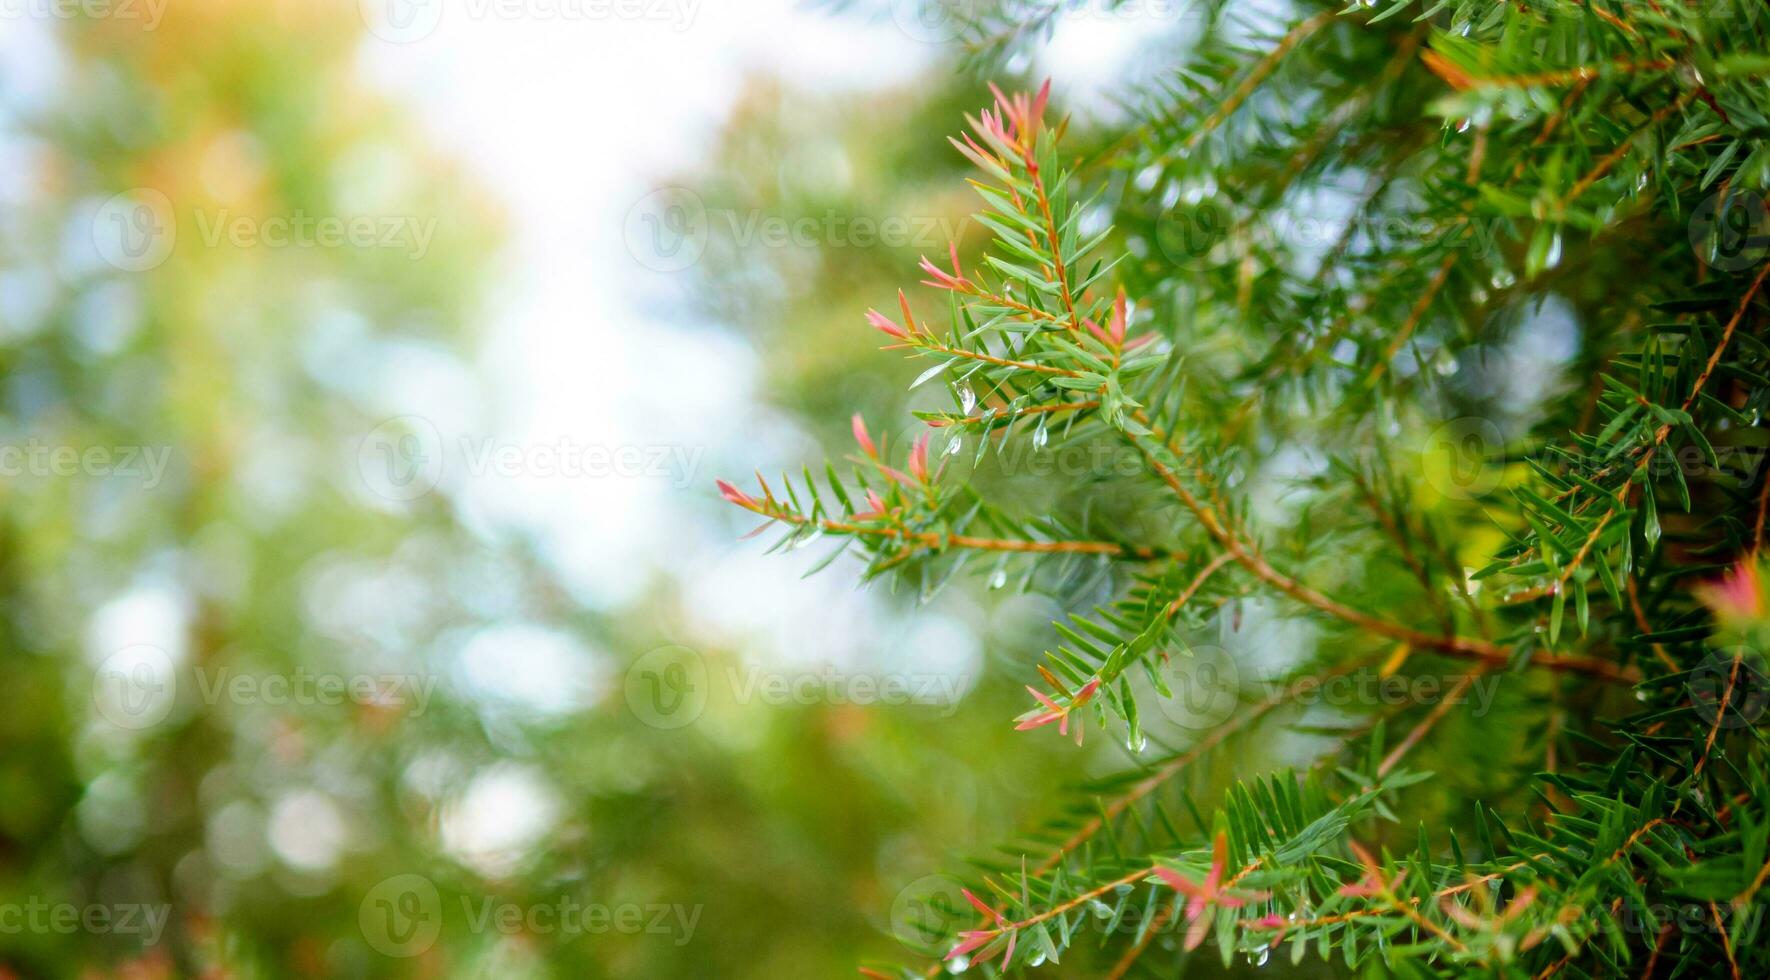 abstrato fundo do uma verde pinho árvore Natal natural bokeh, lindo abstrato natural fundo. desfocado embaçado ensolarado folhagem do verde pinho árvores Natal fundo. foto